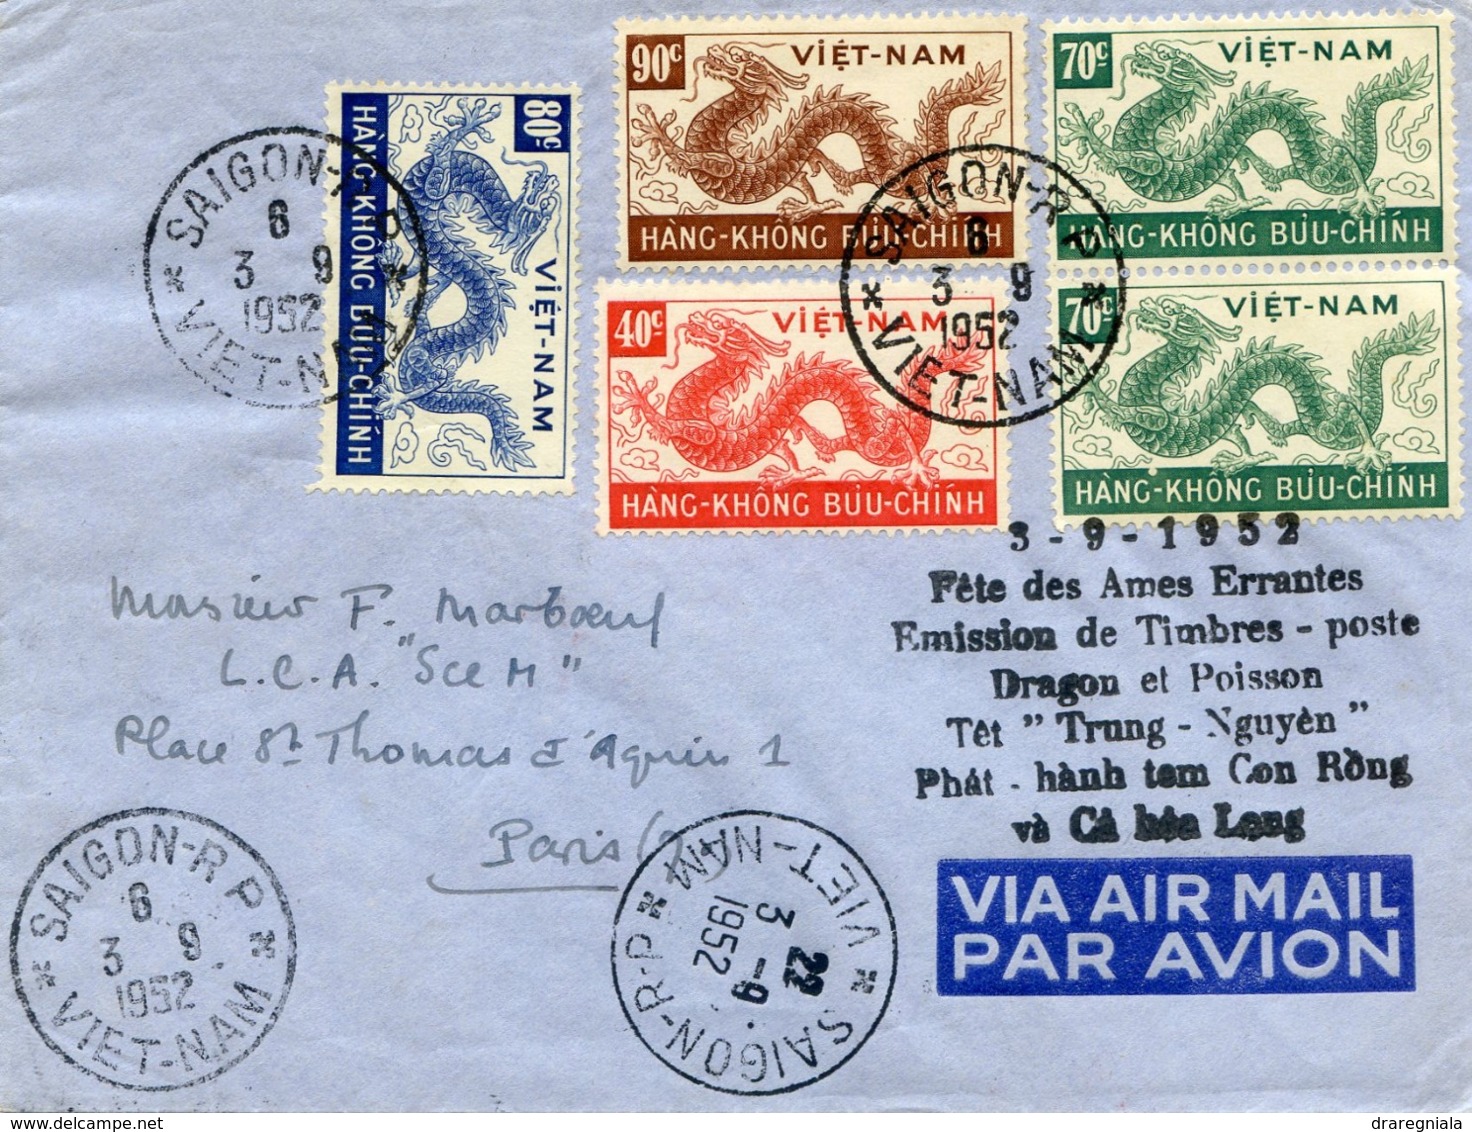 VIETNAM LETTRE AVEC CACHETS BILINGUES ROUGE ET NOIR 3-9-1952 FETE DES AMES ERRANTES EMISSION DE TIMBRES-POSTE DRAGON - Viêt-Nam